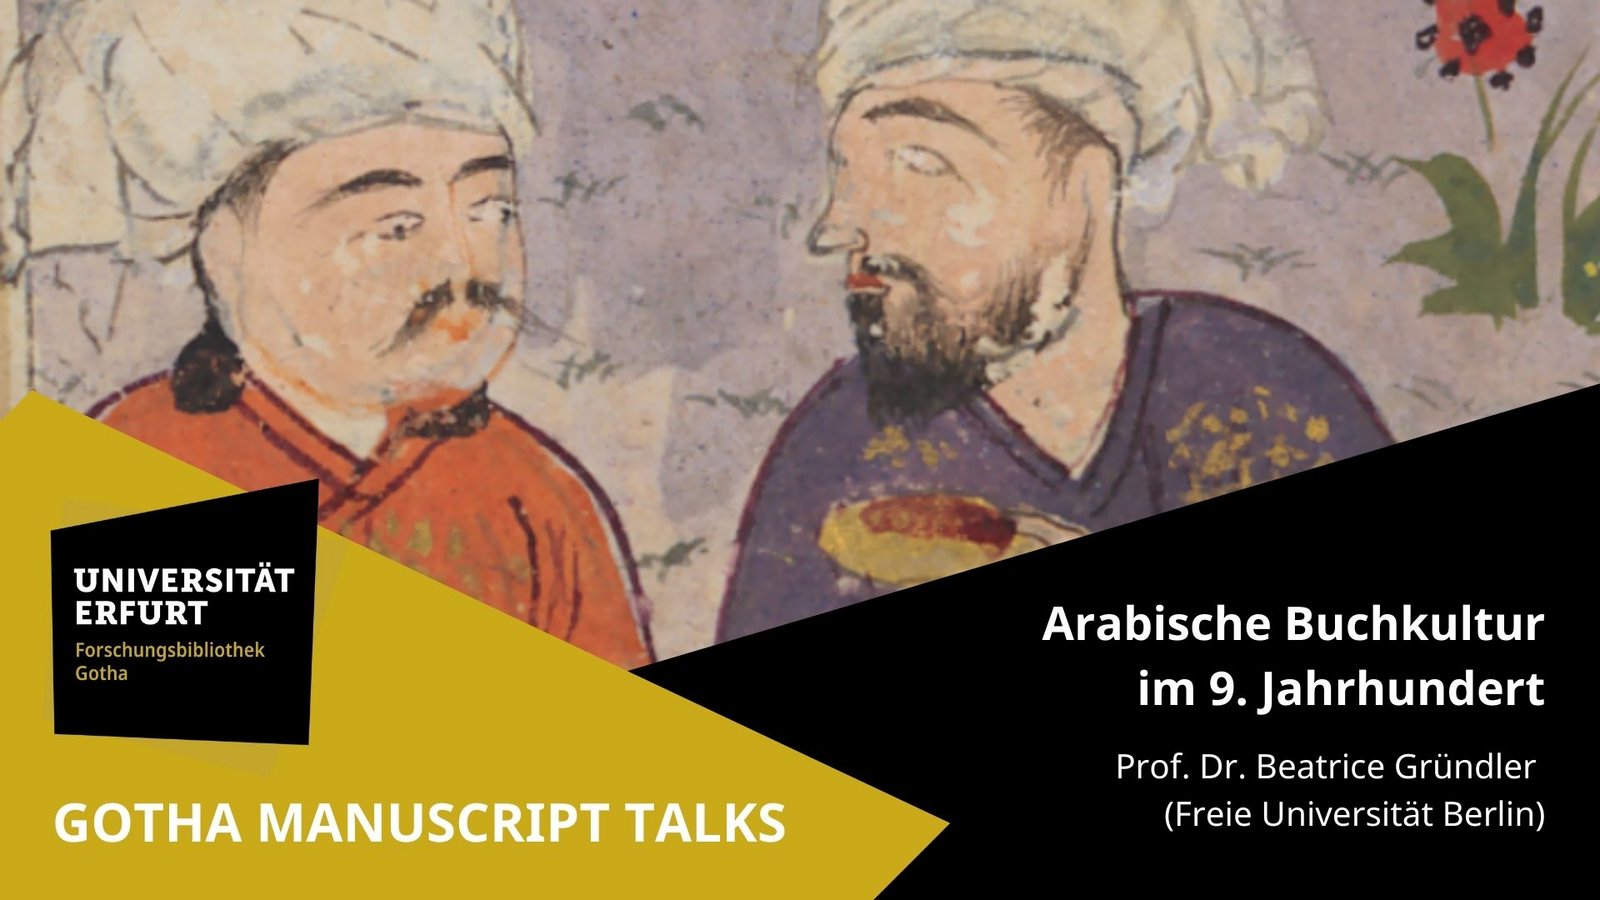 Vorschaubild zu Gotha Manuscript Talks: Arabische Buchkultur im 9. Jahrhundert mit Prof. Dr. Beatrice Gründler